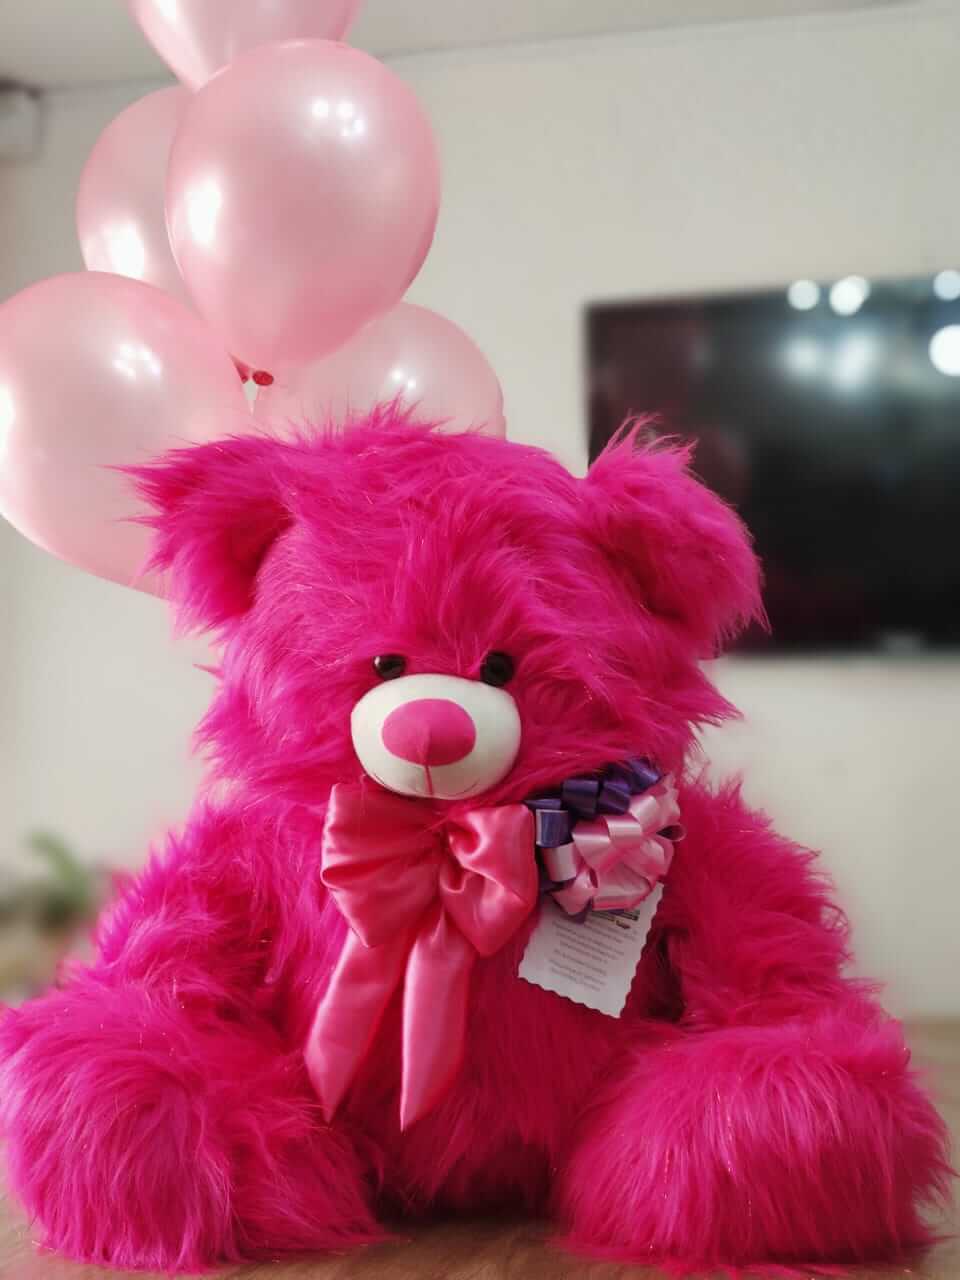 Regalos que enamoran, regalos por San Valentín. Peluches grandes y peluches  gigantes, globos, rosas, chocolat…